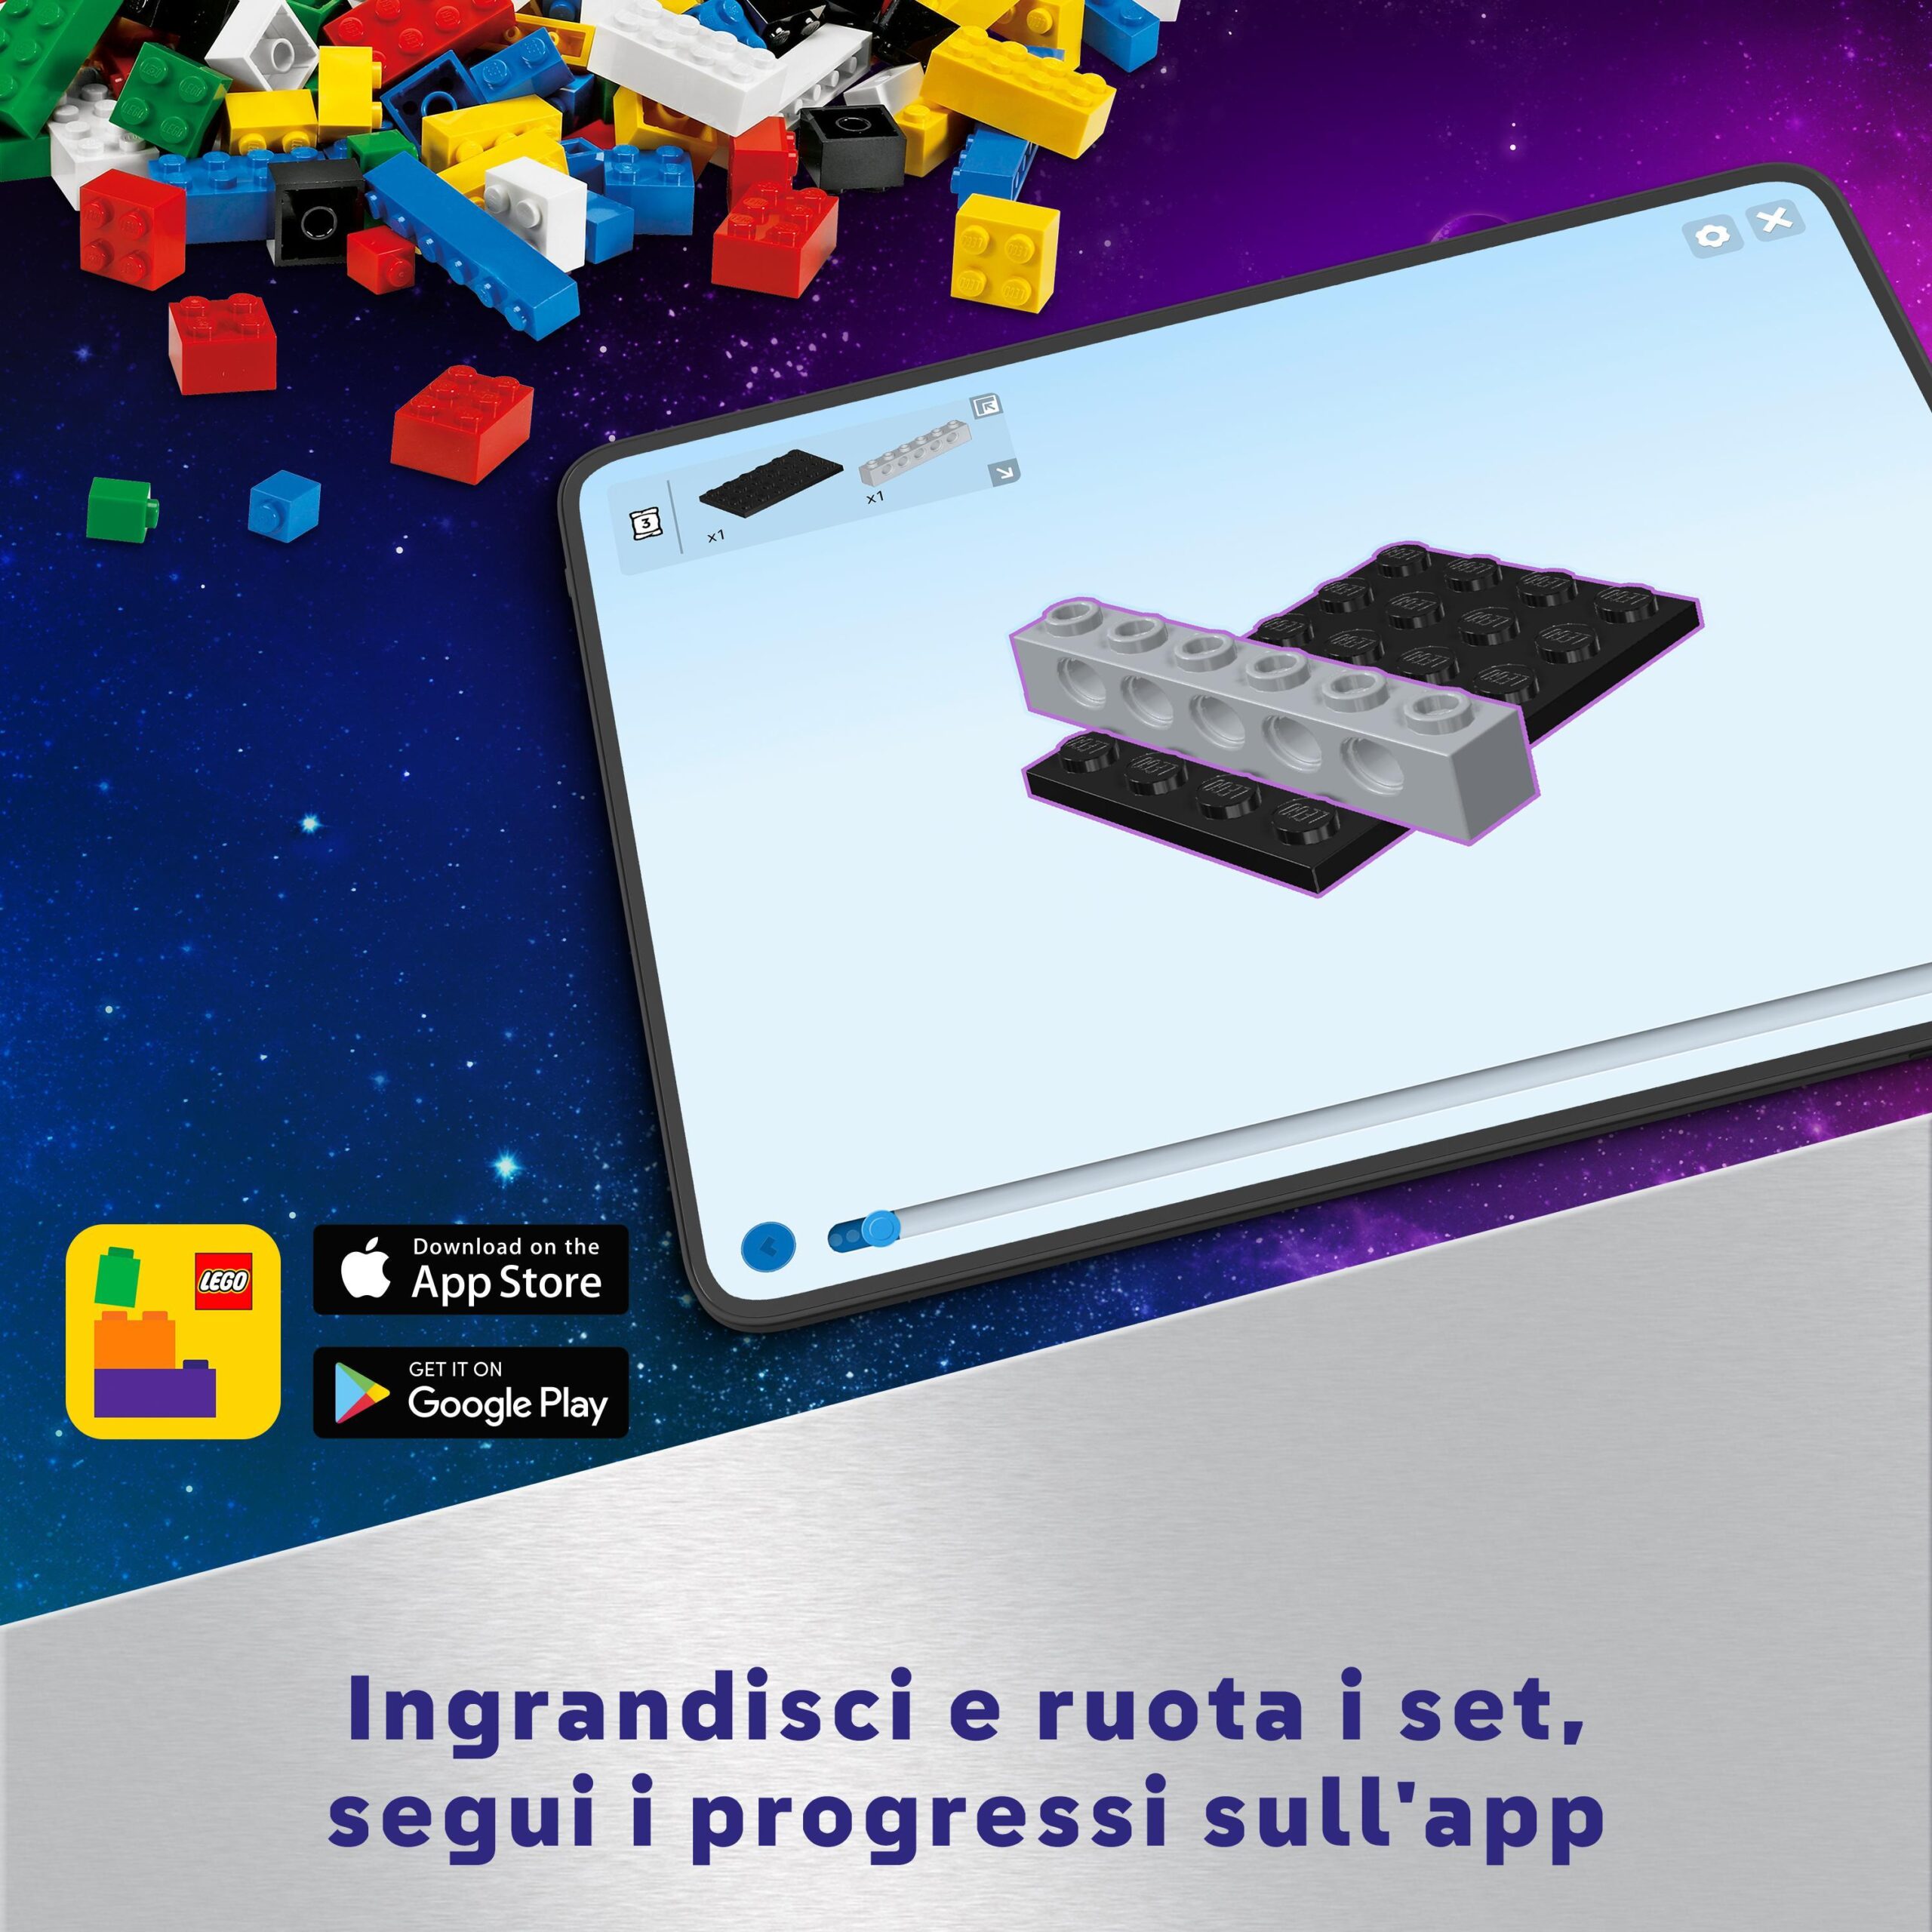 Lego city 60431 rover esploratore spaziale e vita aliena, giochi per bambini 6+ con 2 minifigure di astronauti, robot e 2 alieni - LEGO CITY